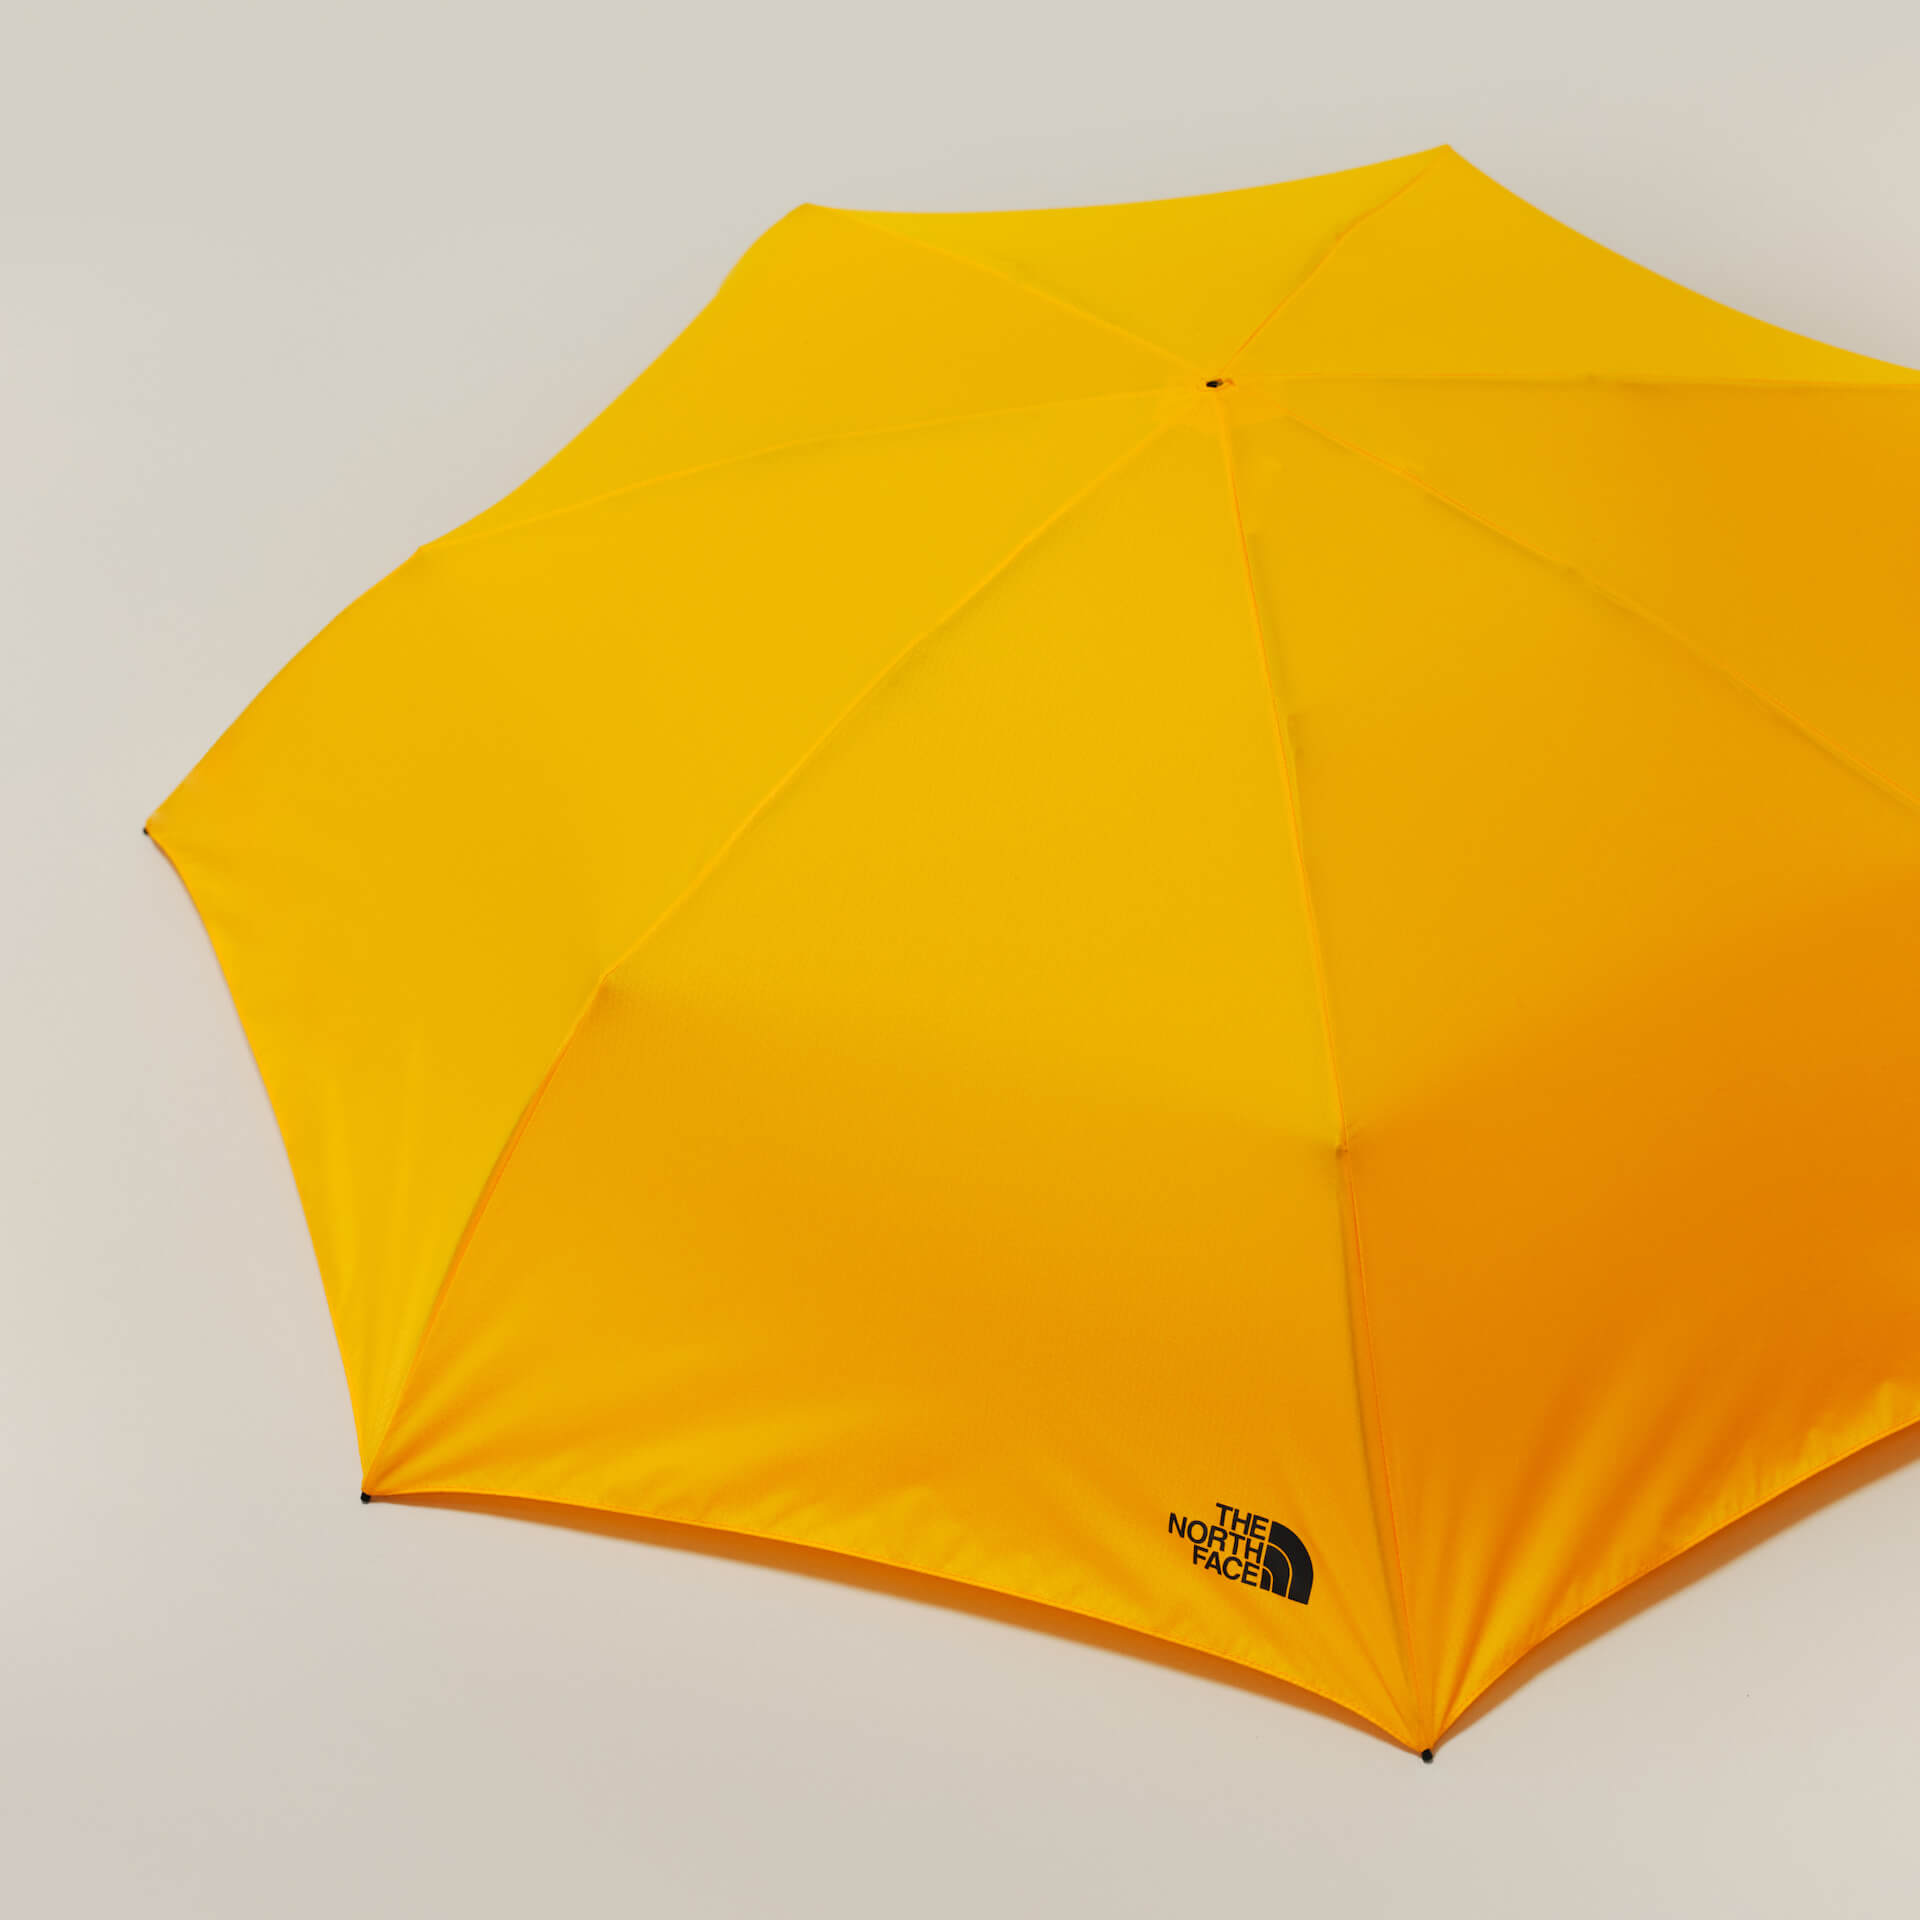 THE NORTH FACE初の折りたたみ傘「Module Umbrella」登場｜ブランド初のシステムを採用、分解修理が可能 lifefashion230608-thenorthface5